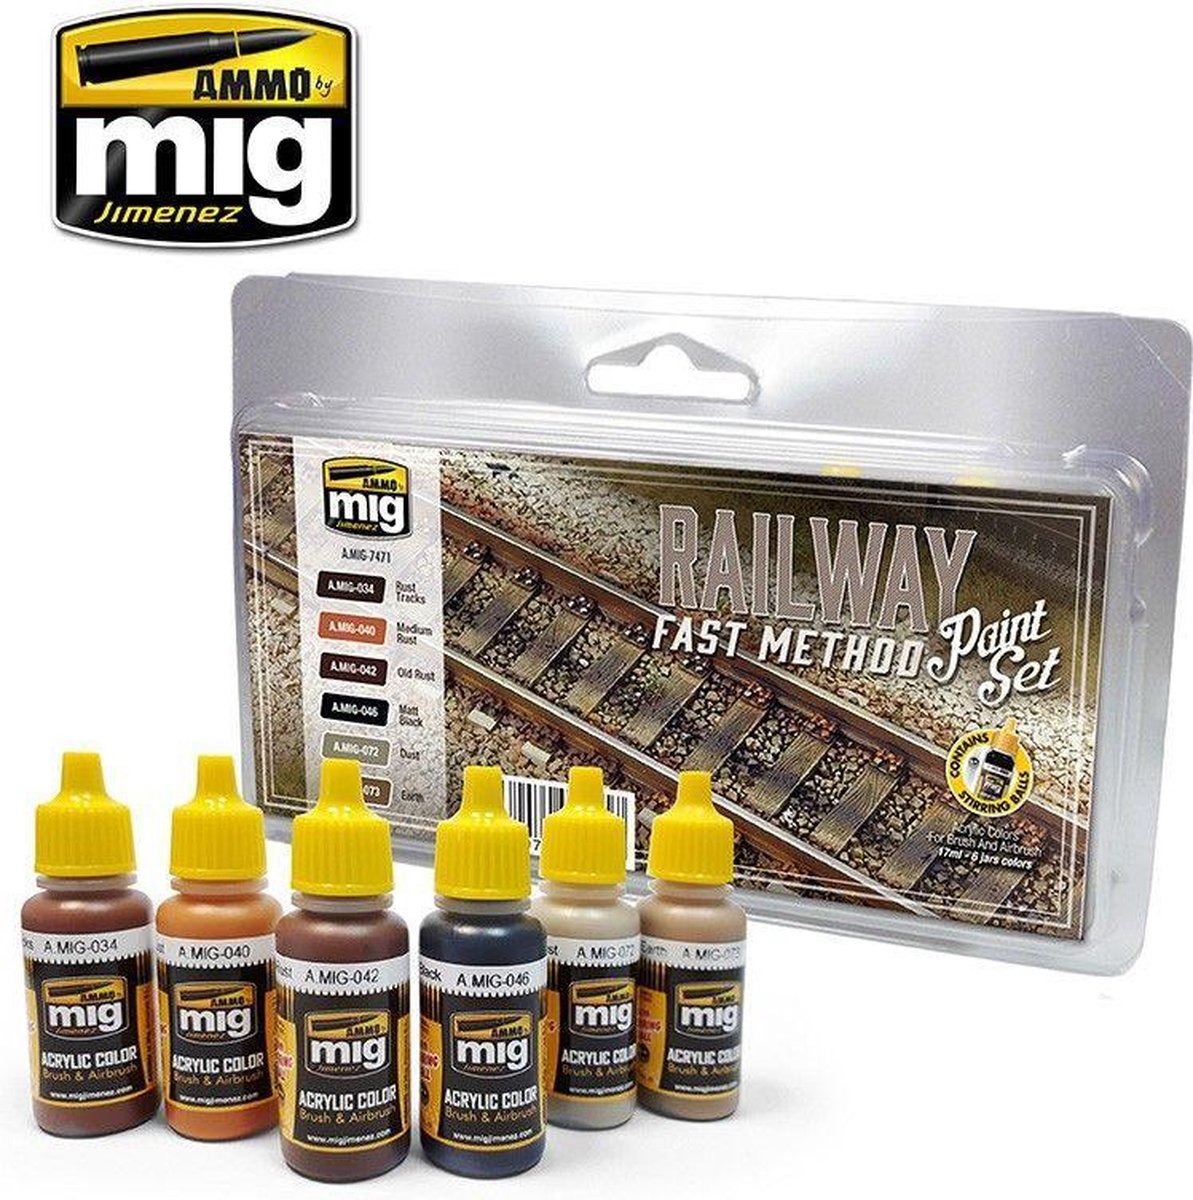 Mig - Railway Fast Method Paint Set (Mig7471) - modelbouwsets, hobbybouwspeelgoed voor kinderen, modelverf en accessoires